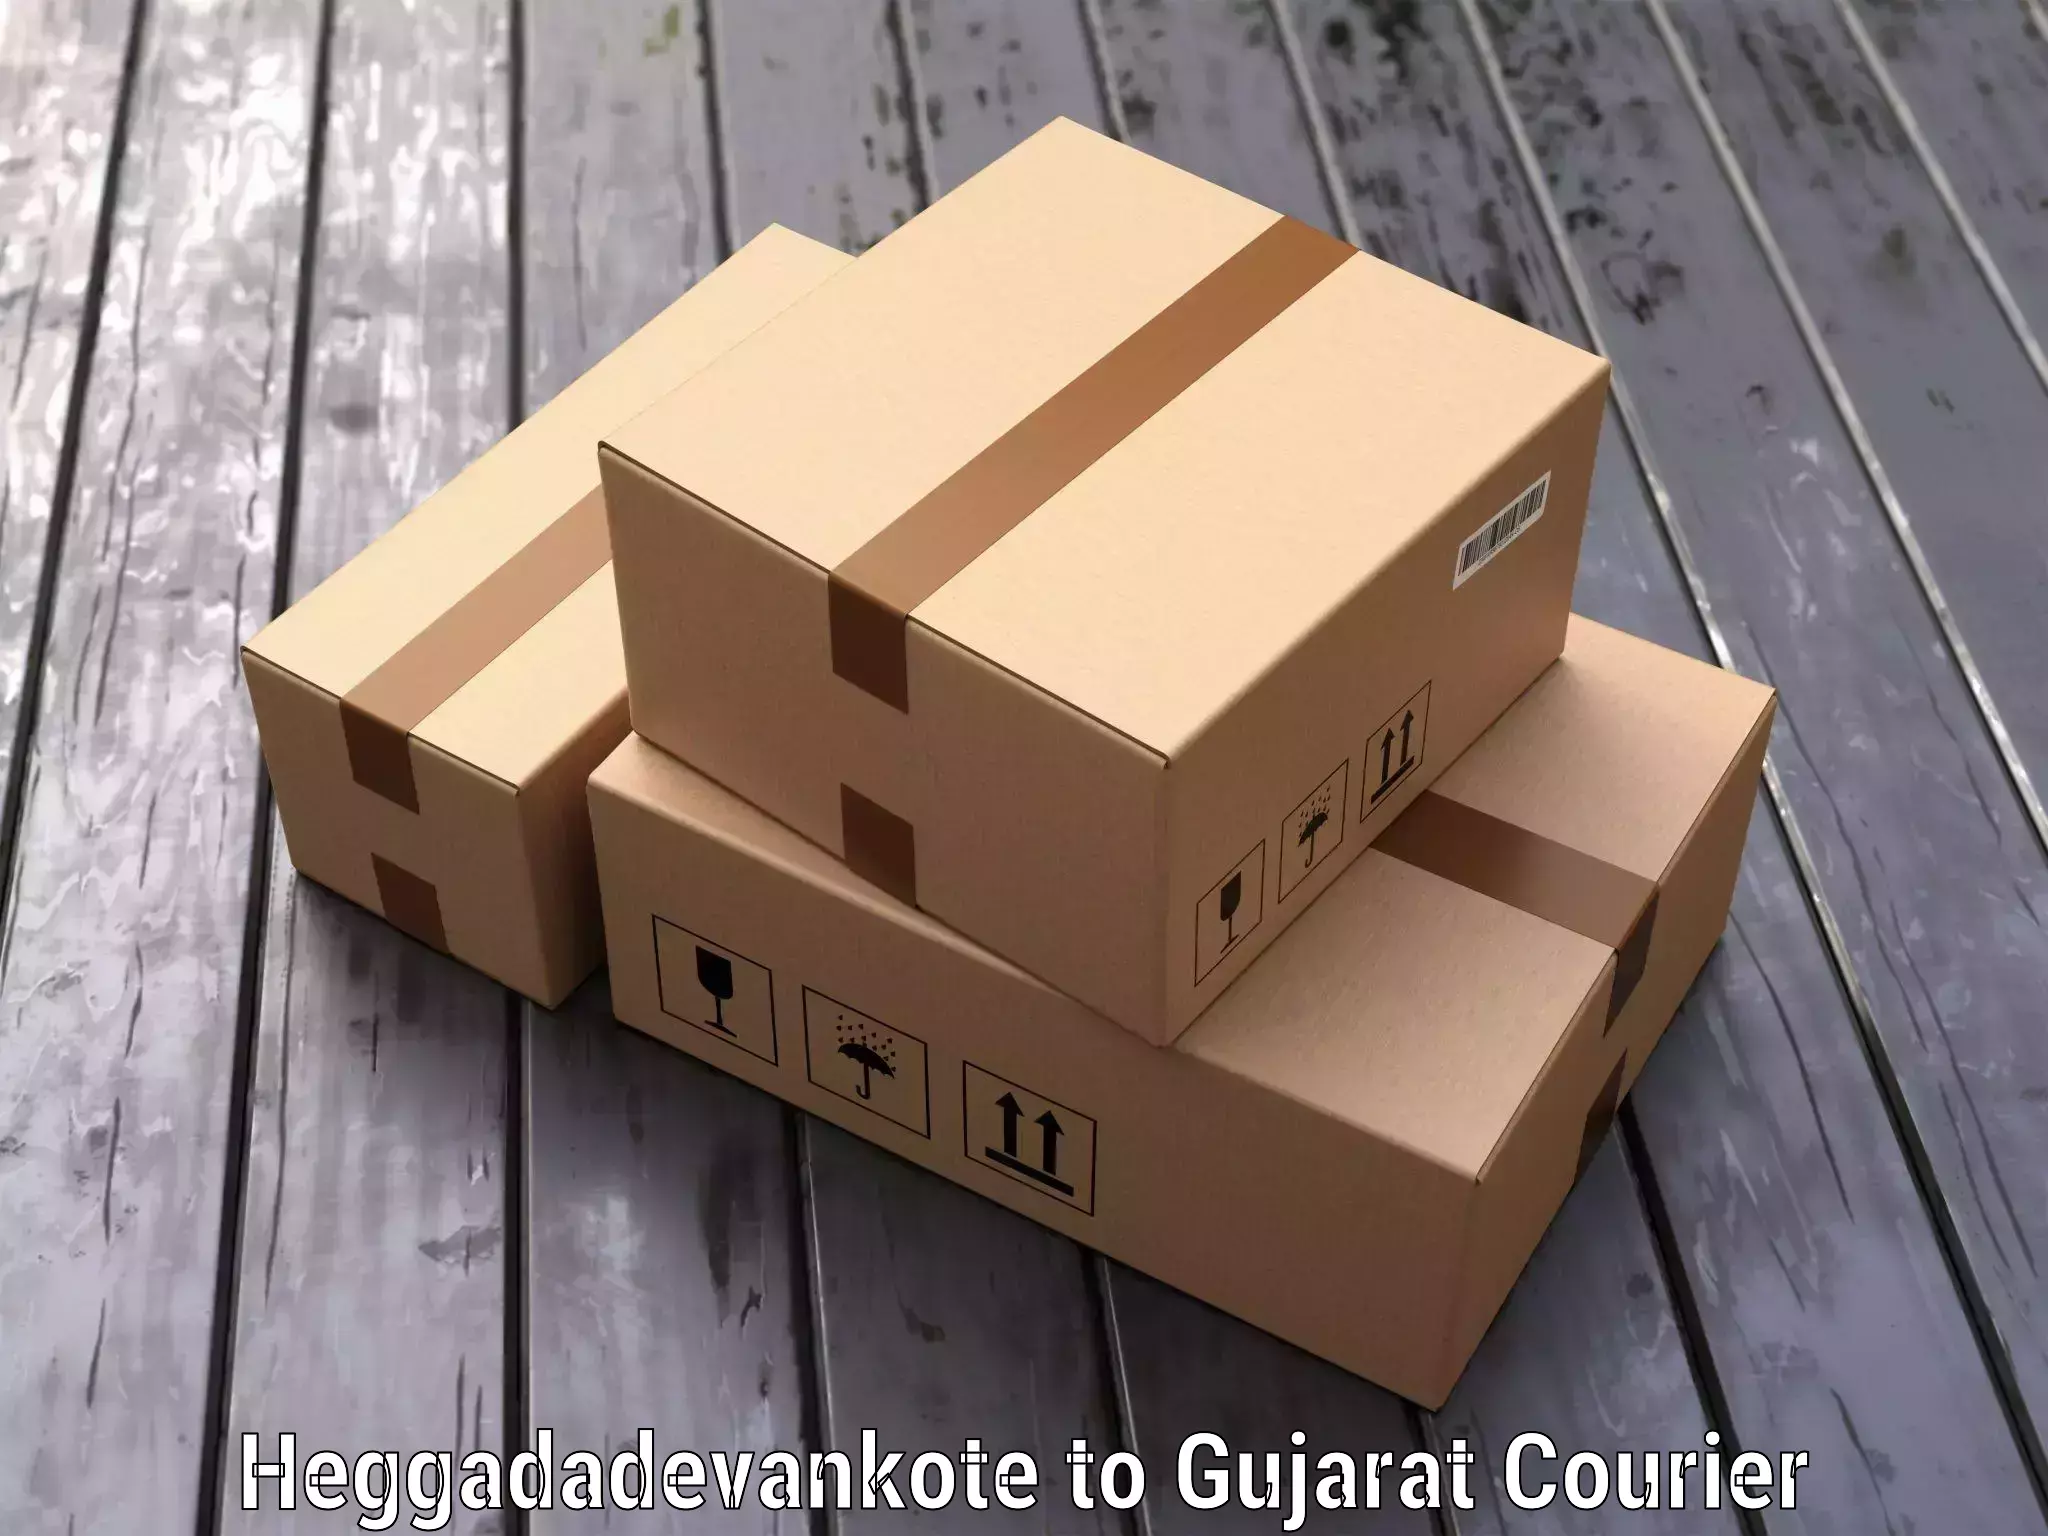 Baggage transport technology Heggadadevankote to Gujarat